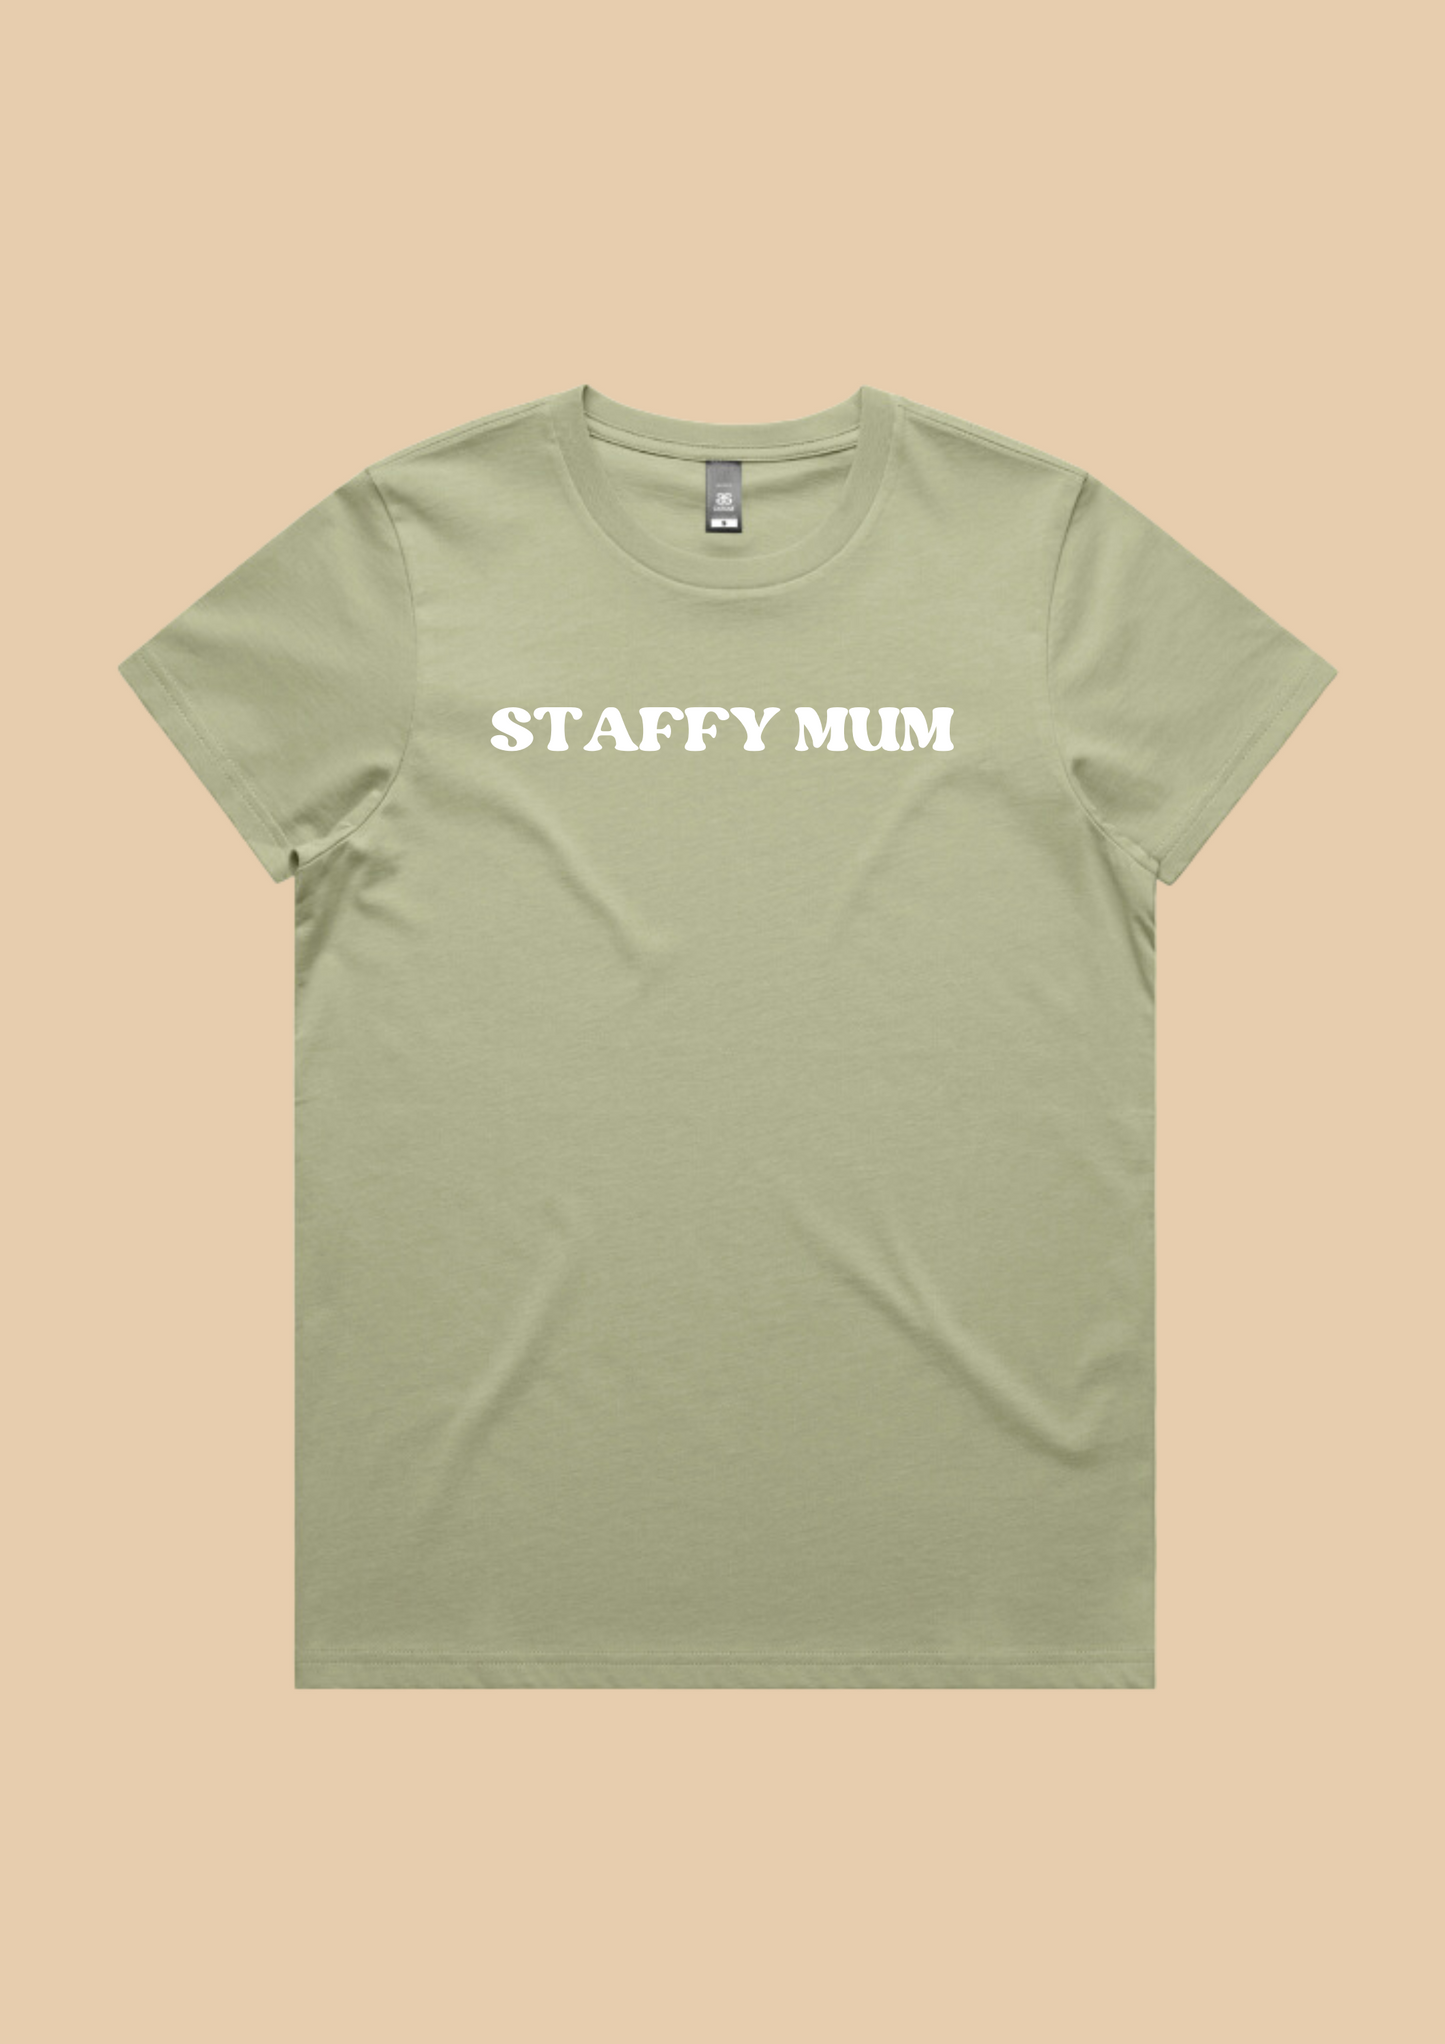 dog mum quote tshirts dog lover tshirts customisable custom dog mum gift